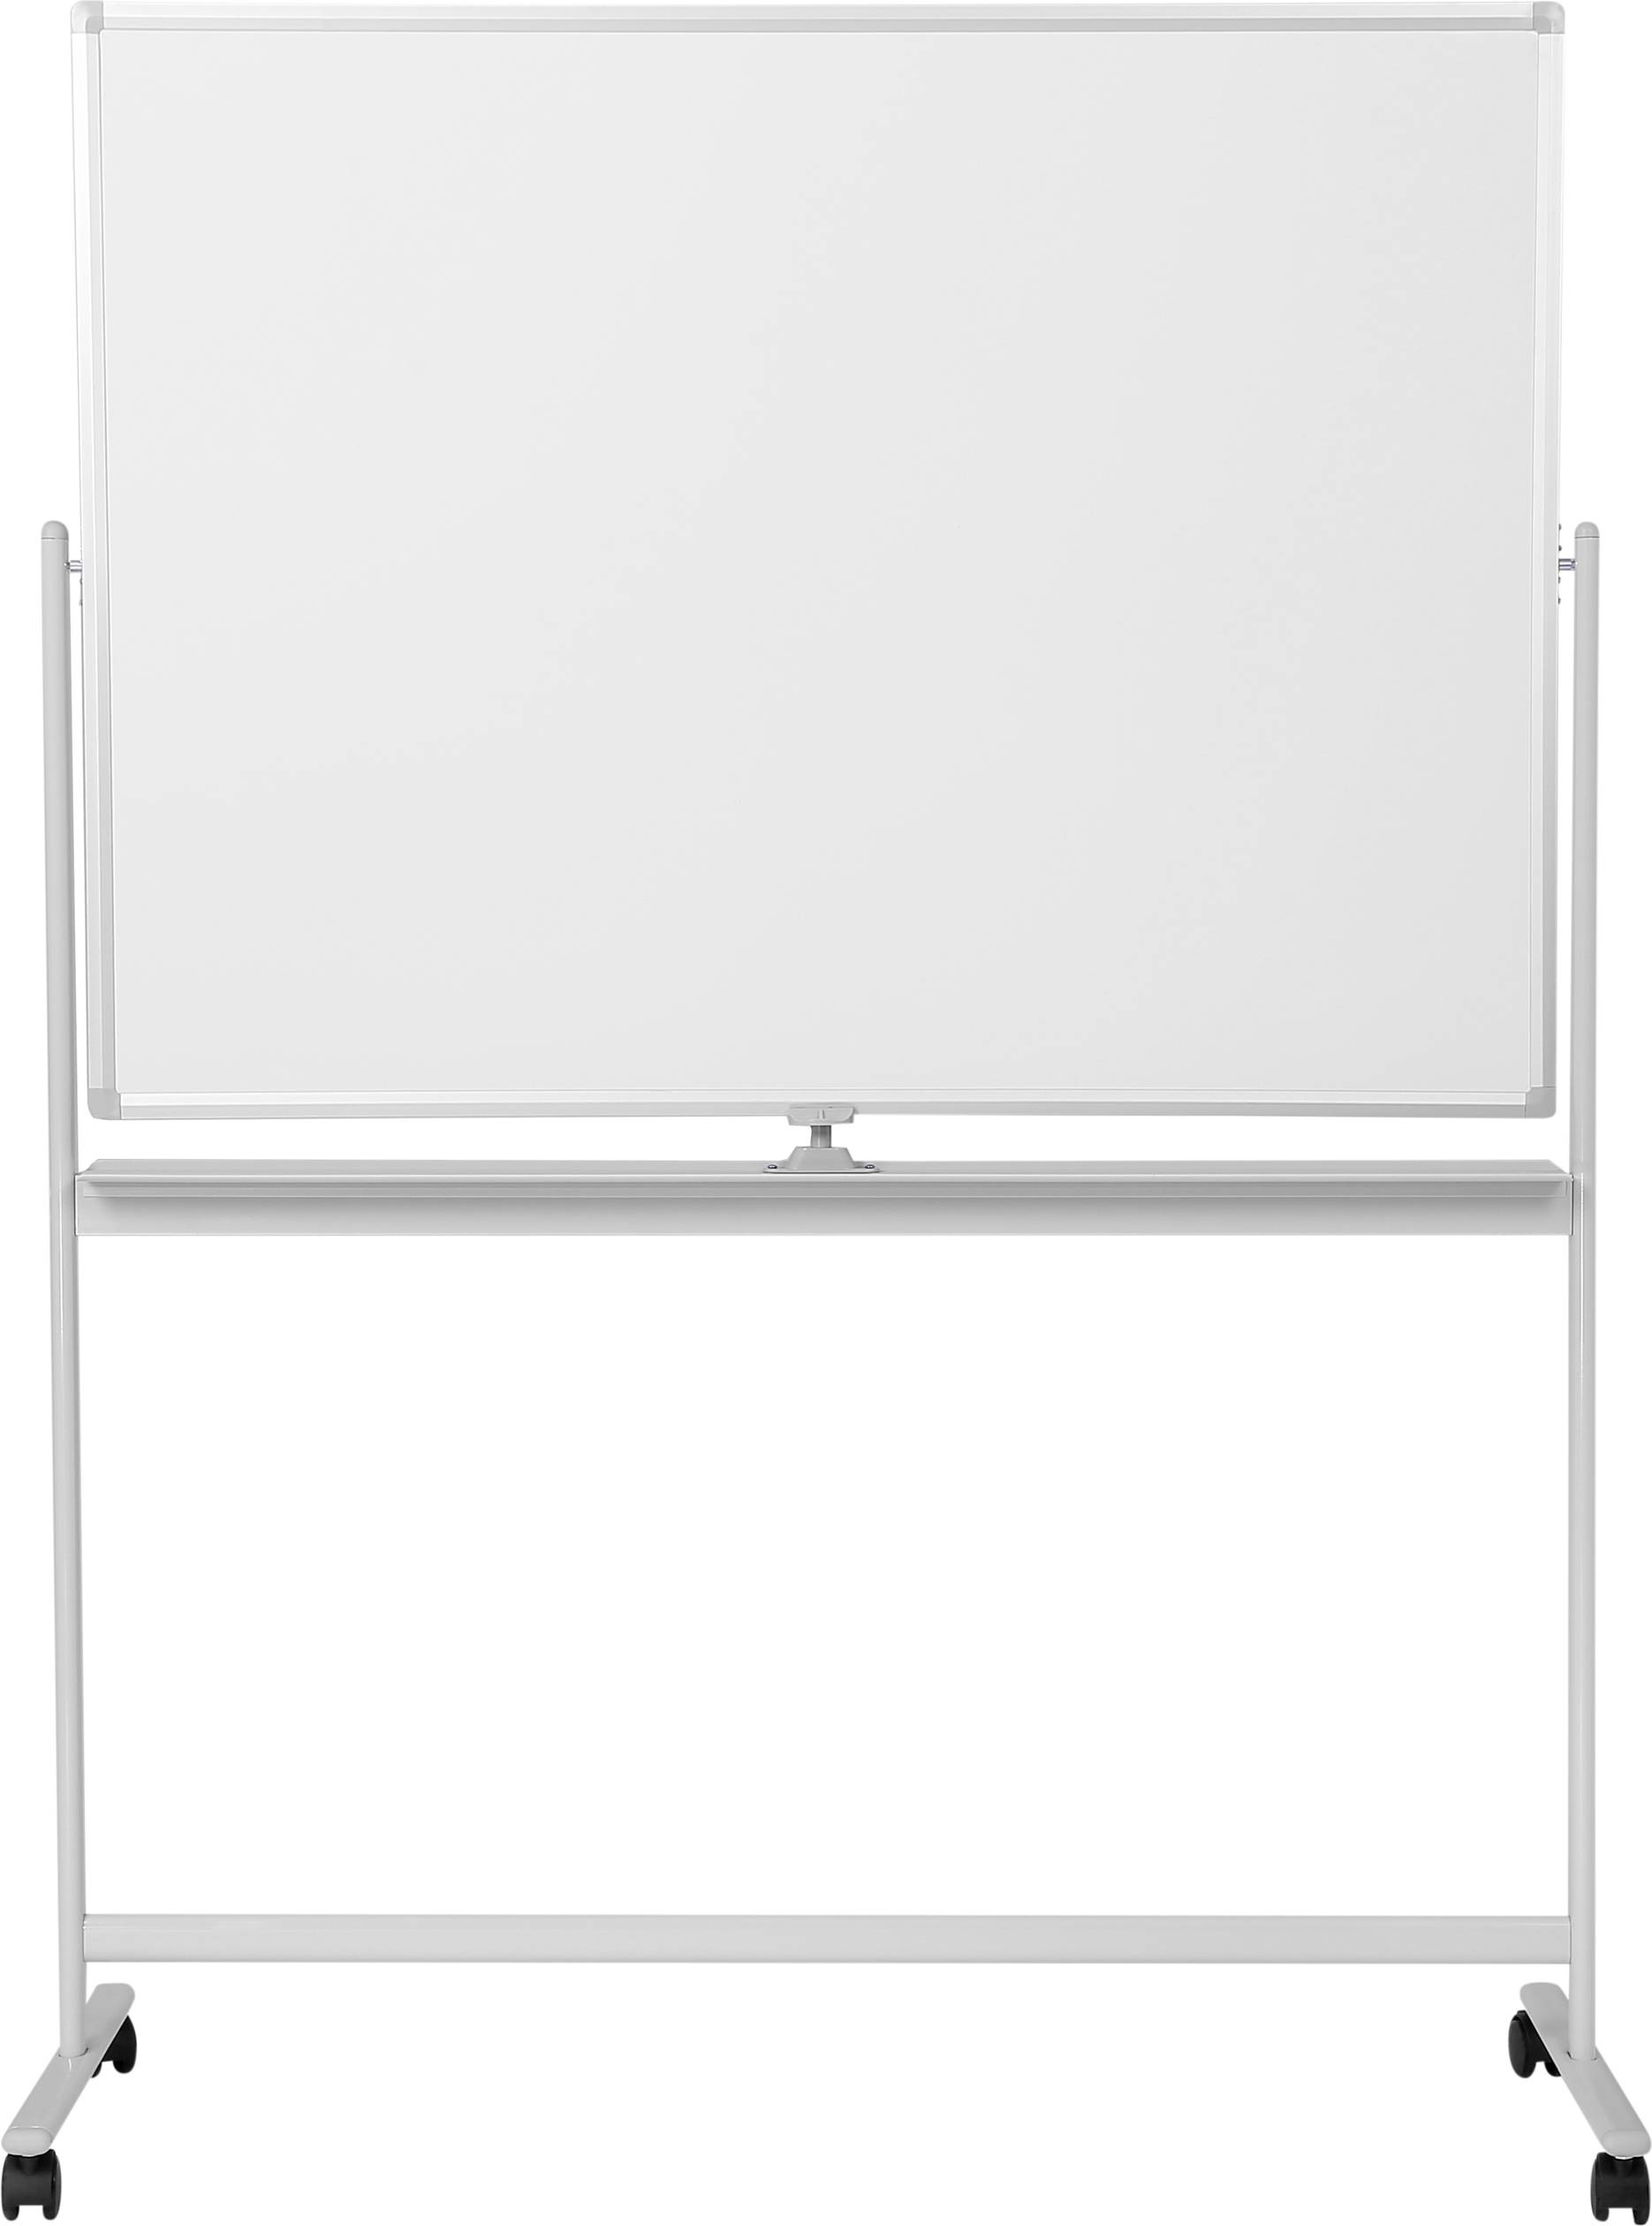 SPEAKA PROFESSIONAL Whiteboard SP-WB-312 (B x H) 1200 mm x 800 mm Weiß Querformat, Beide Seit